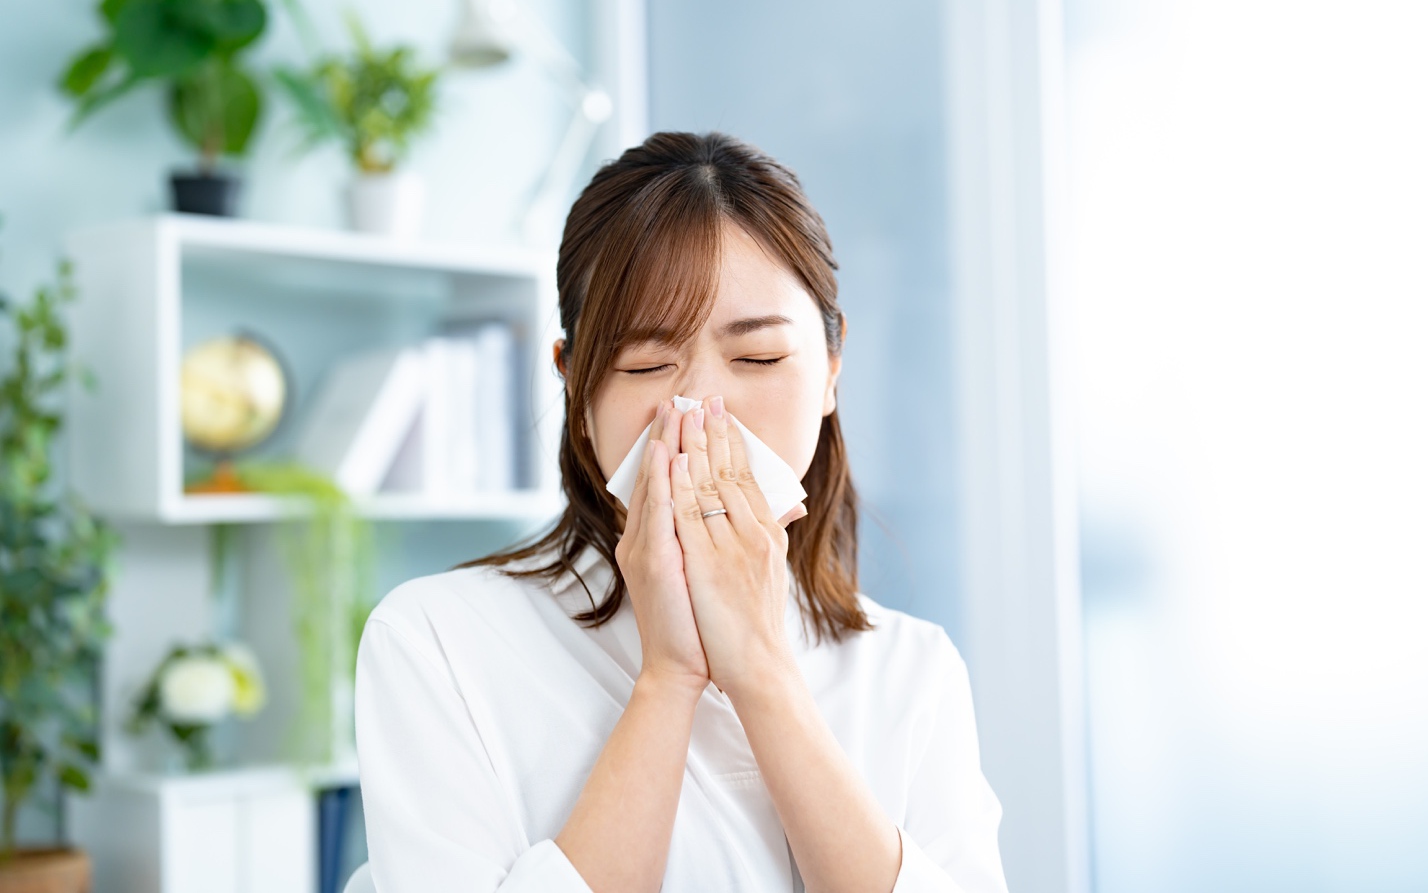 Phân biệt viêm mũi dị ứng với các bệnh về hô hấp khác - Ảnh 1.